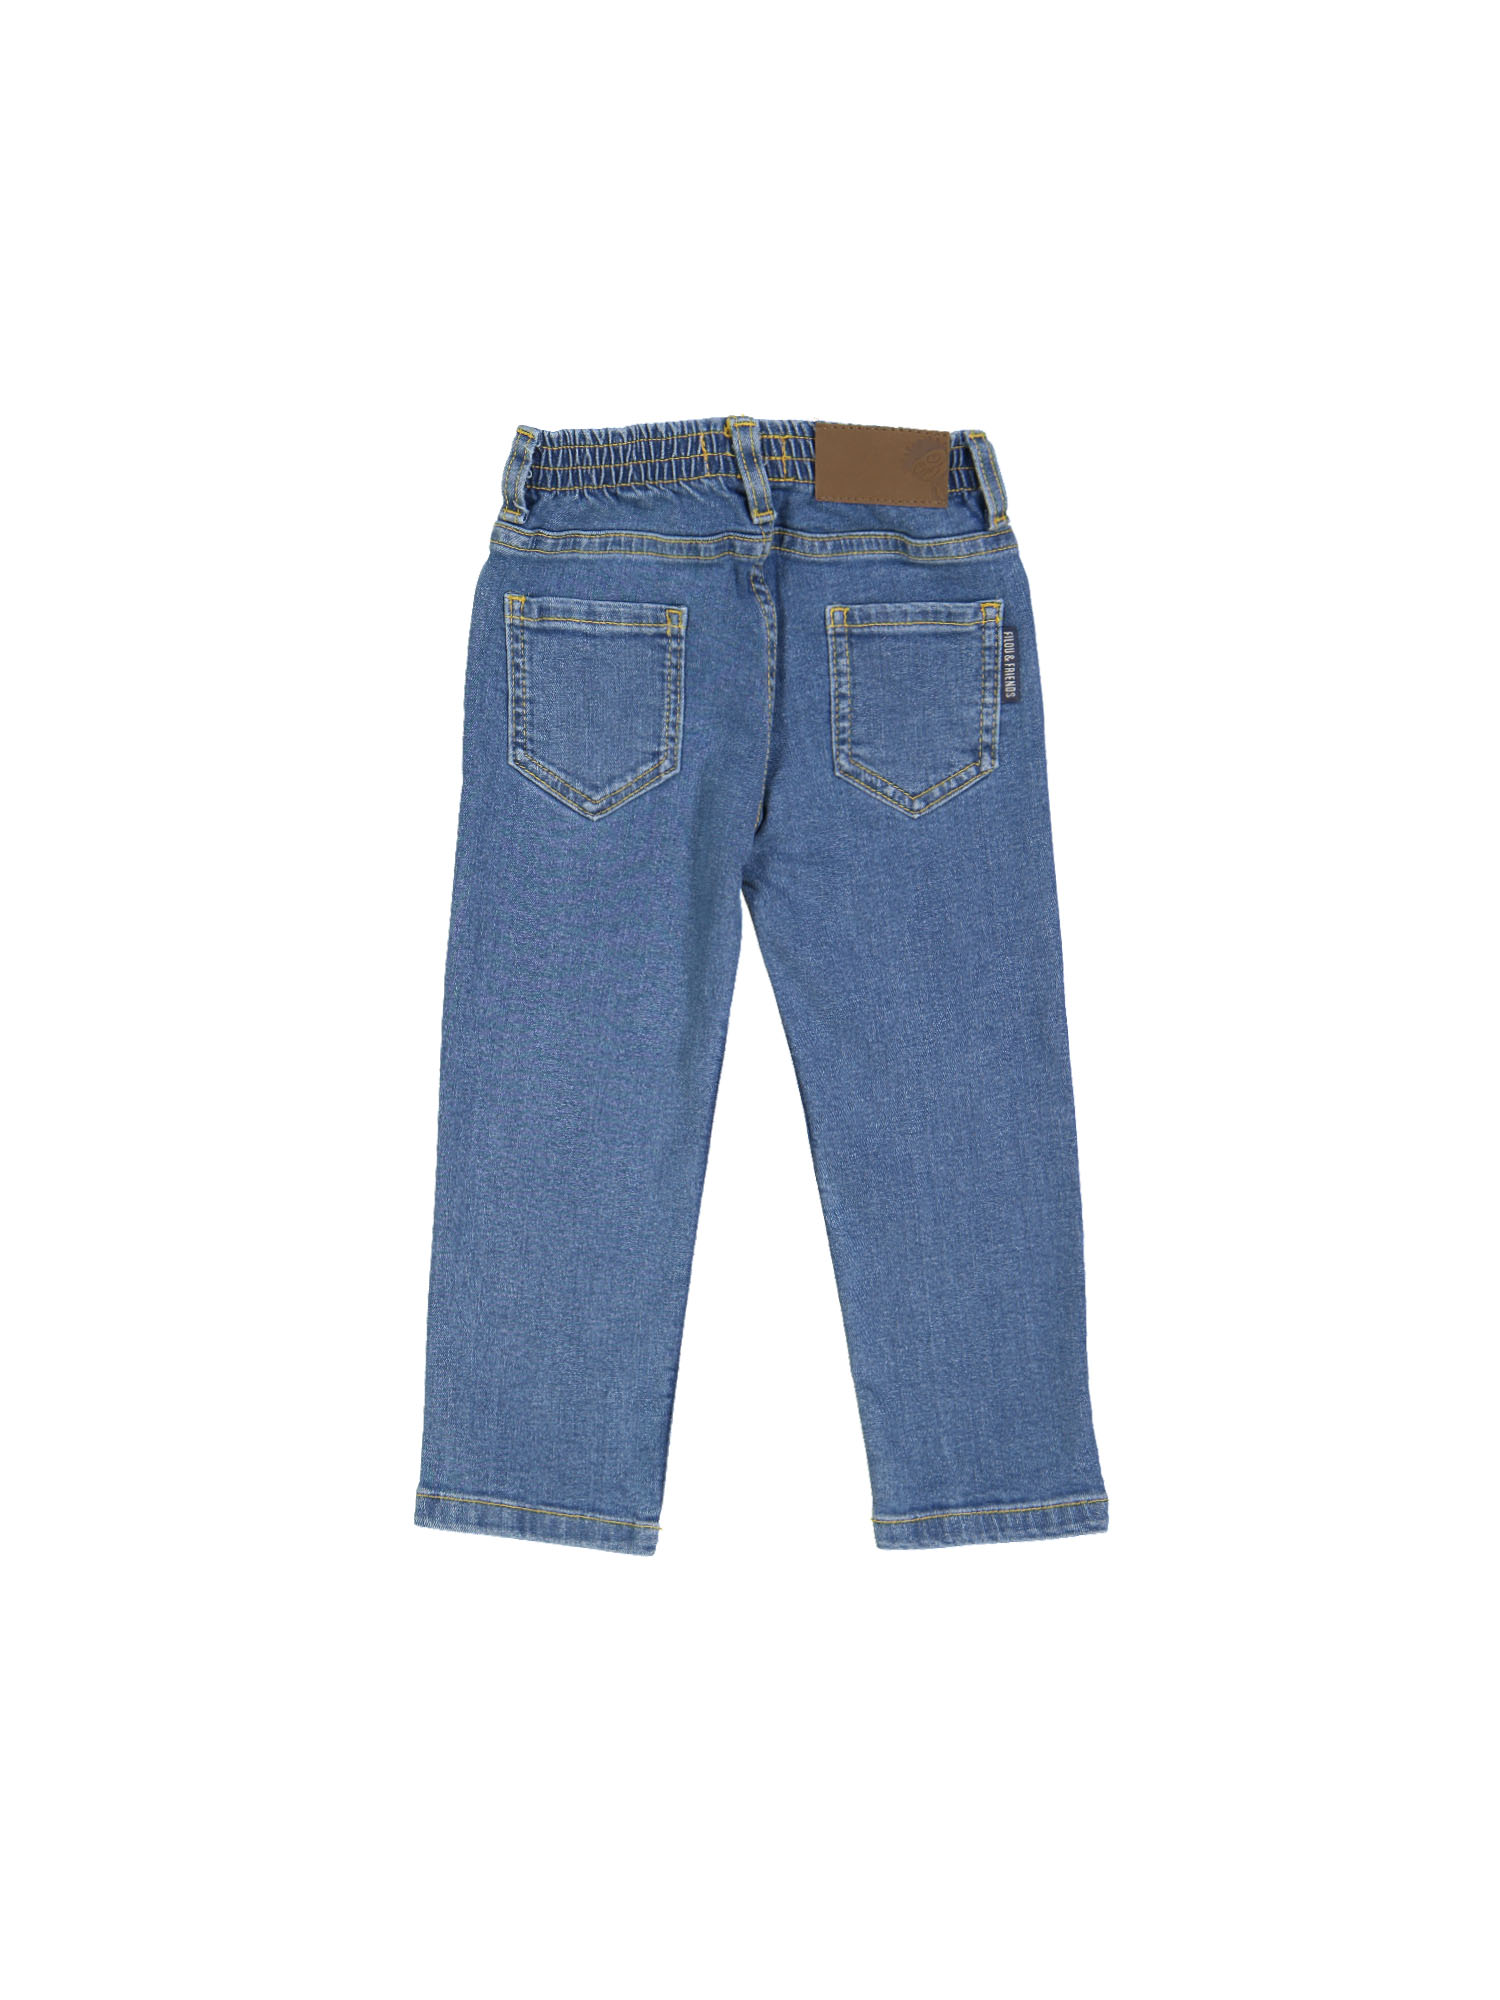 jeans regular bleach blauw rekker 04j